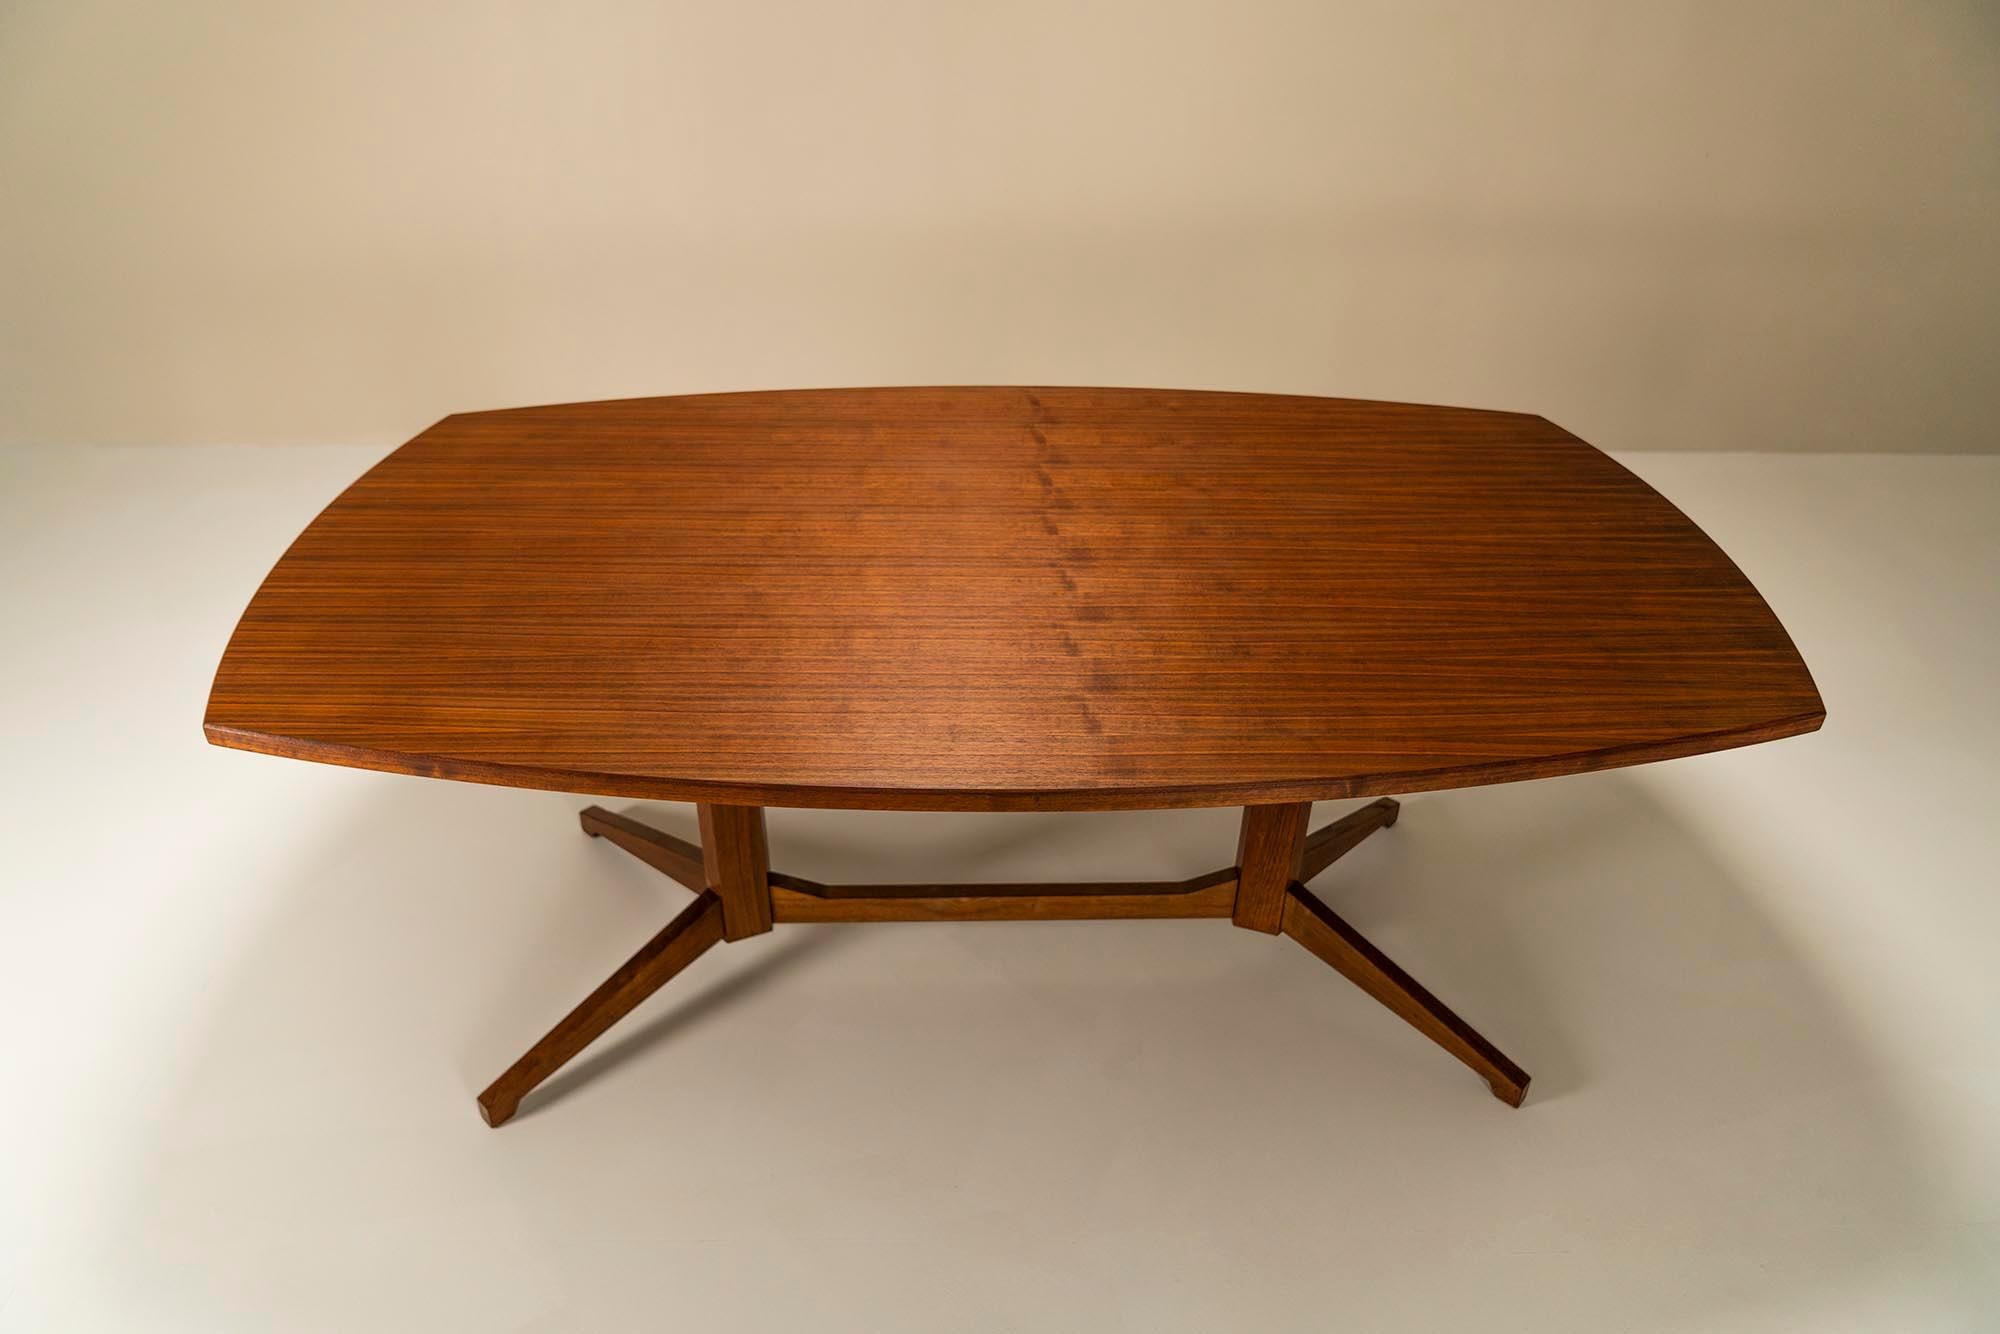 Magnifique table de salle à manger modèle 'TL22' de Franco Albini et Franca Helg pour Poggi, datant de 1958. Les architectes Albini et Helg ont travaillé ensemble sur un grand nombre de projets de 1951 jusqu'à la mort d'Albini en 1977. Tant dans le